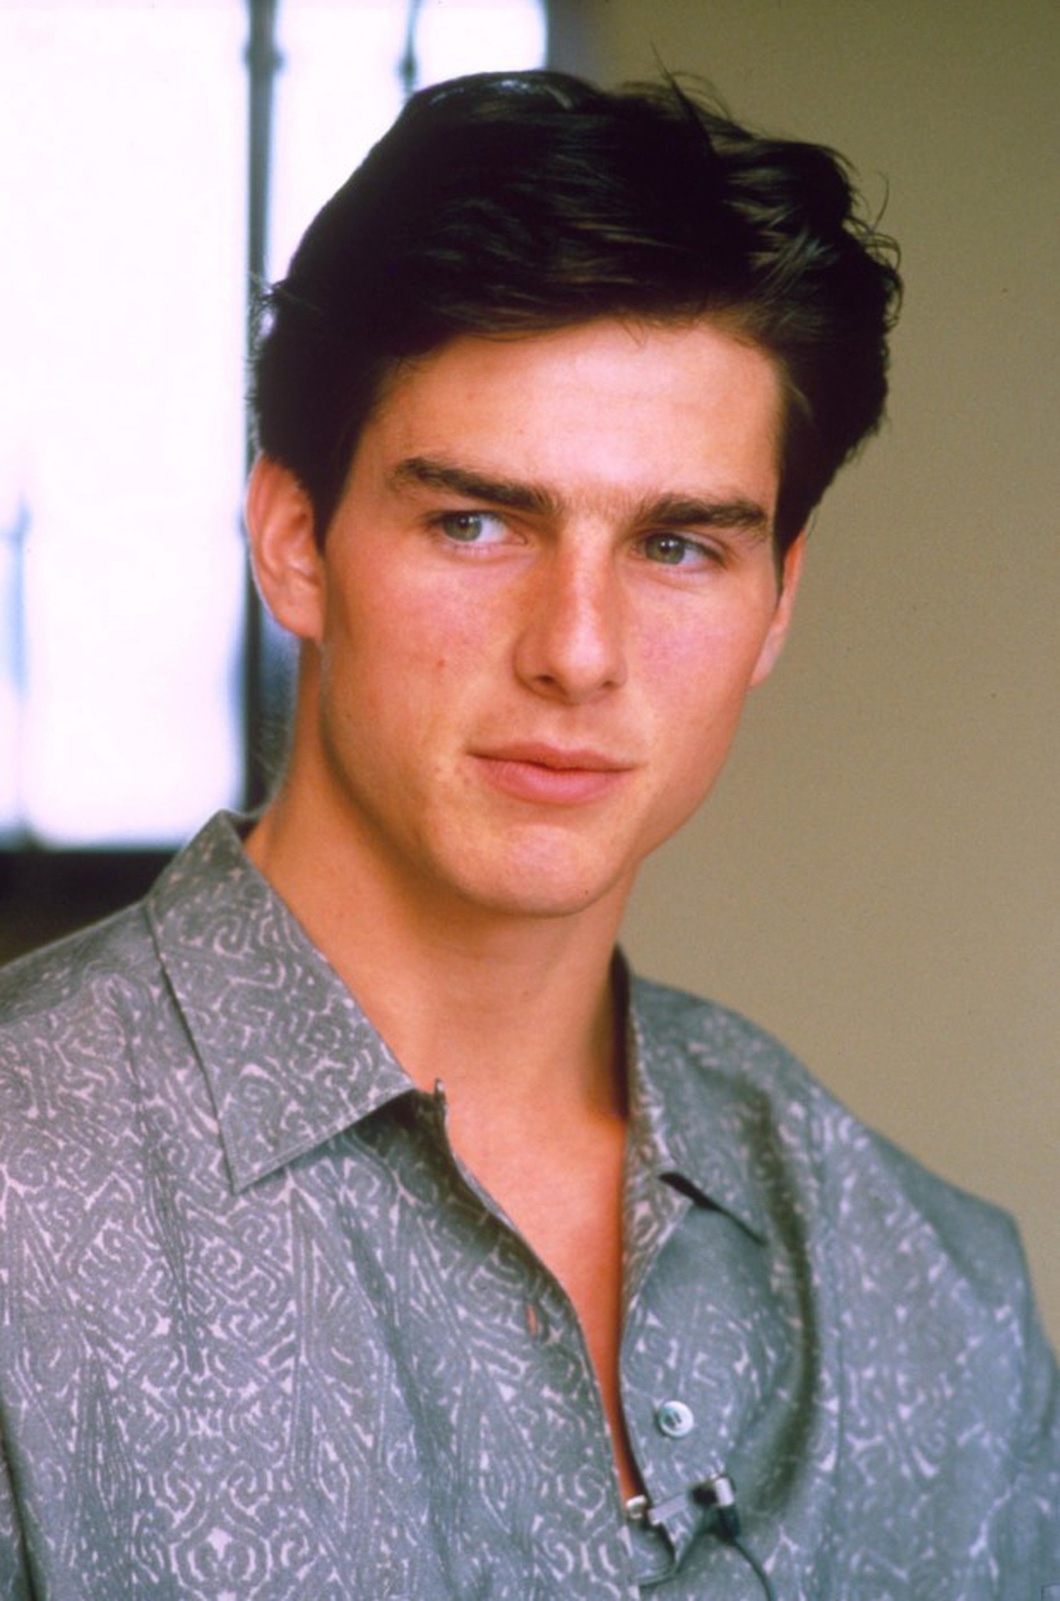 Tom Cruise thời tuổi teen - Ảnh: AP News